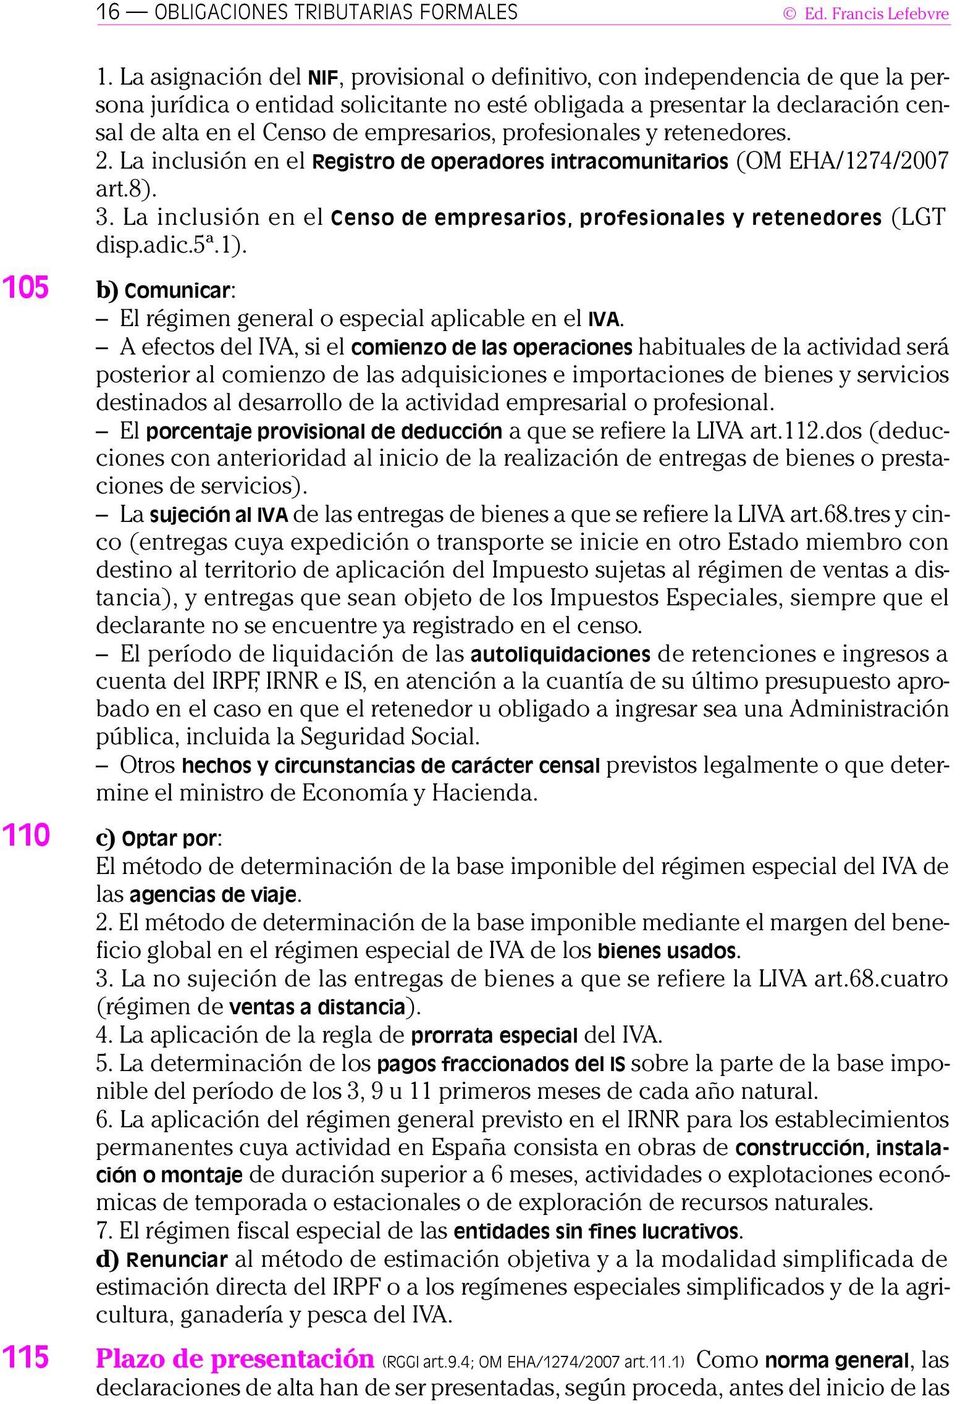 empresarios, profesionales y retenedores. 2. La inclusión en el Registro de operadores intracomunitarios (OM EHA/1274/2007 art.8). 3.